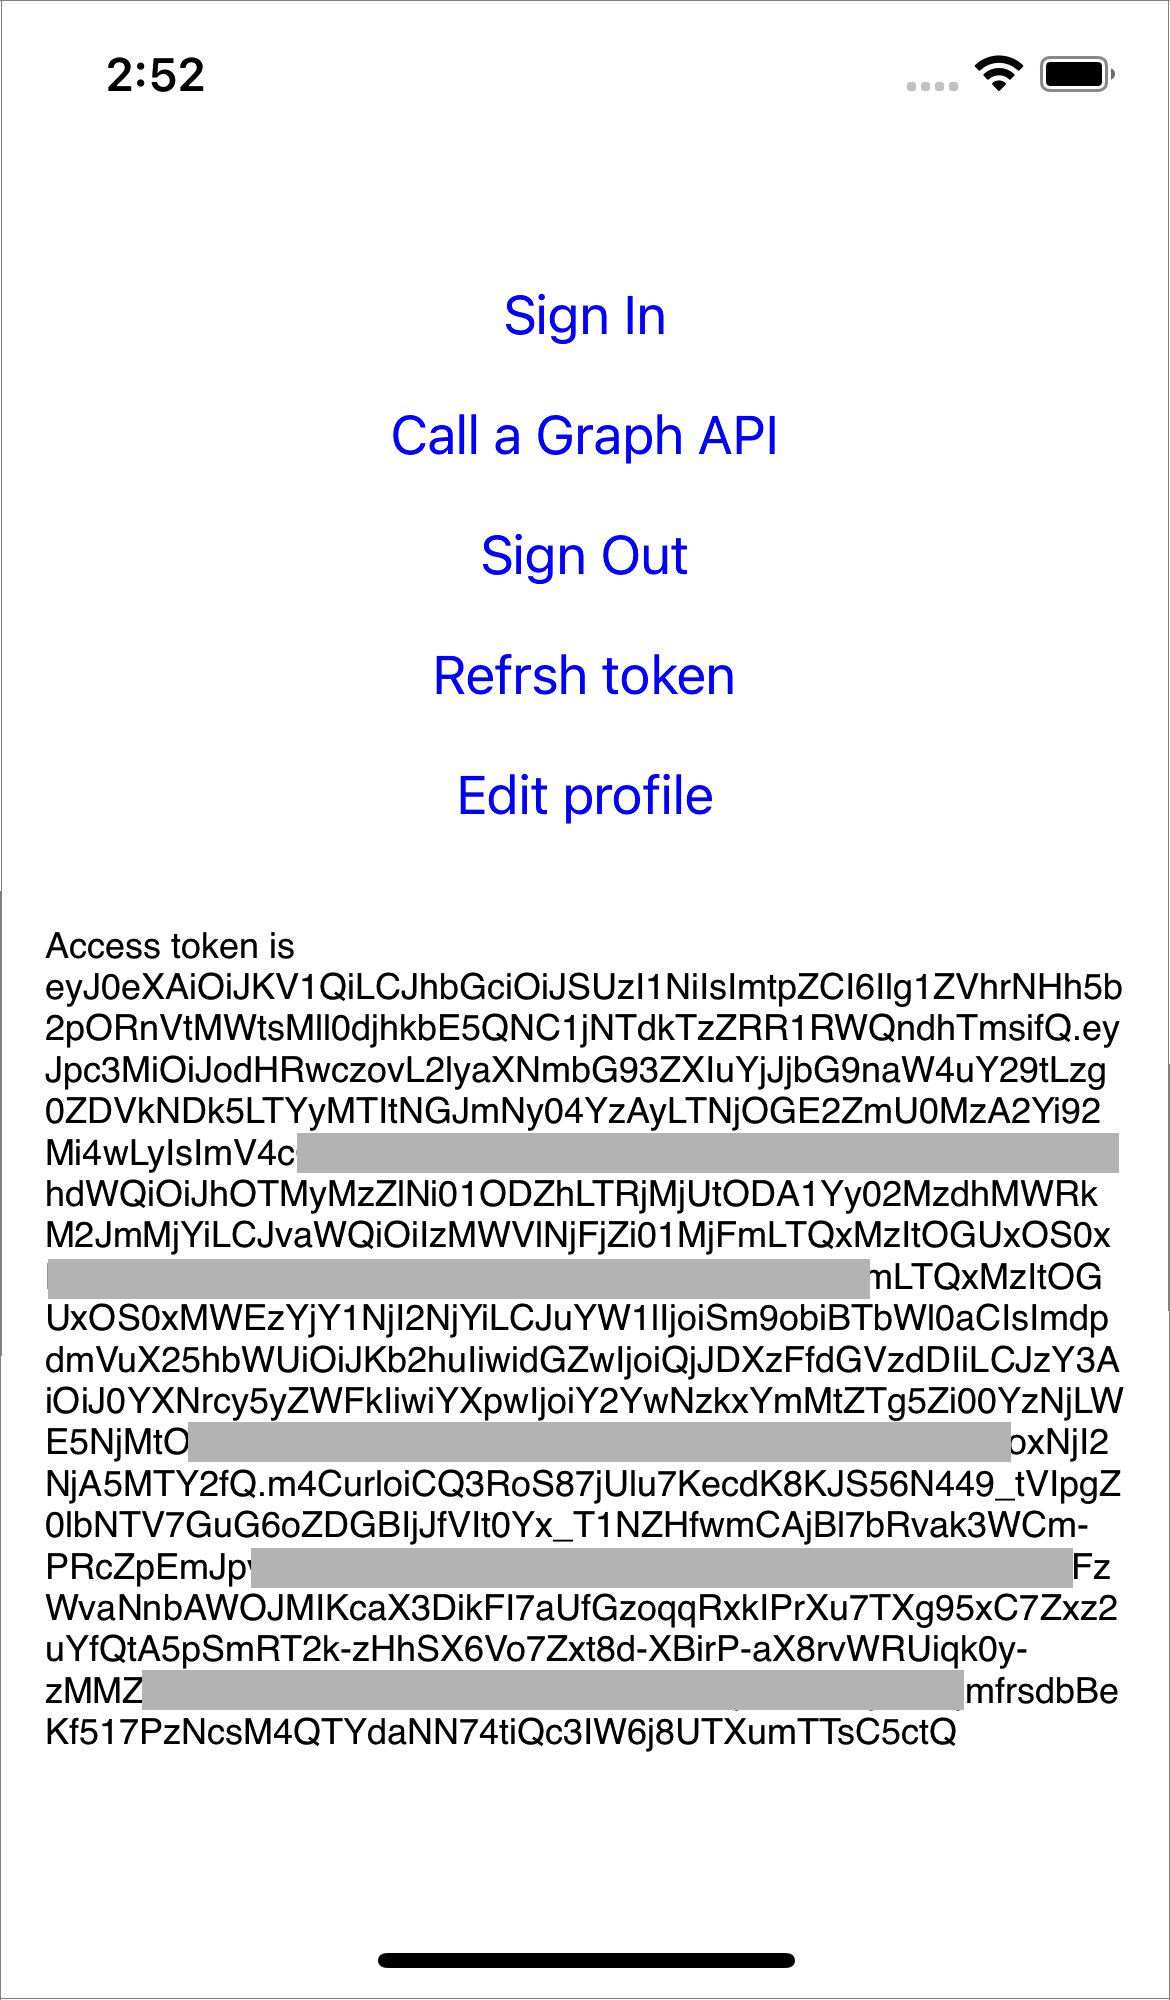 Captura de tela realçando o token de acesso e o ID de usuário do Azure AD B2C.